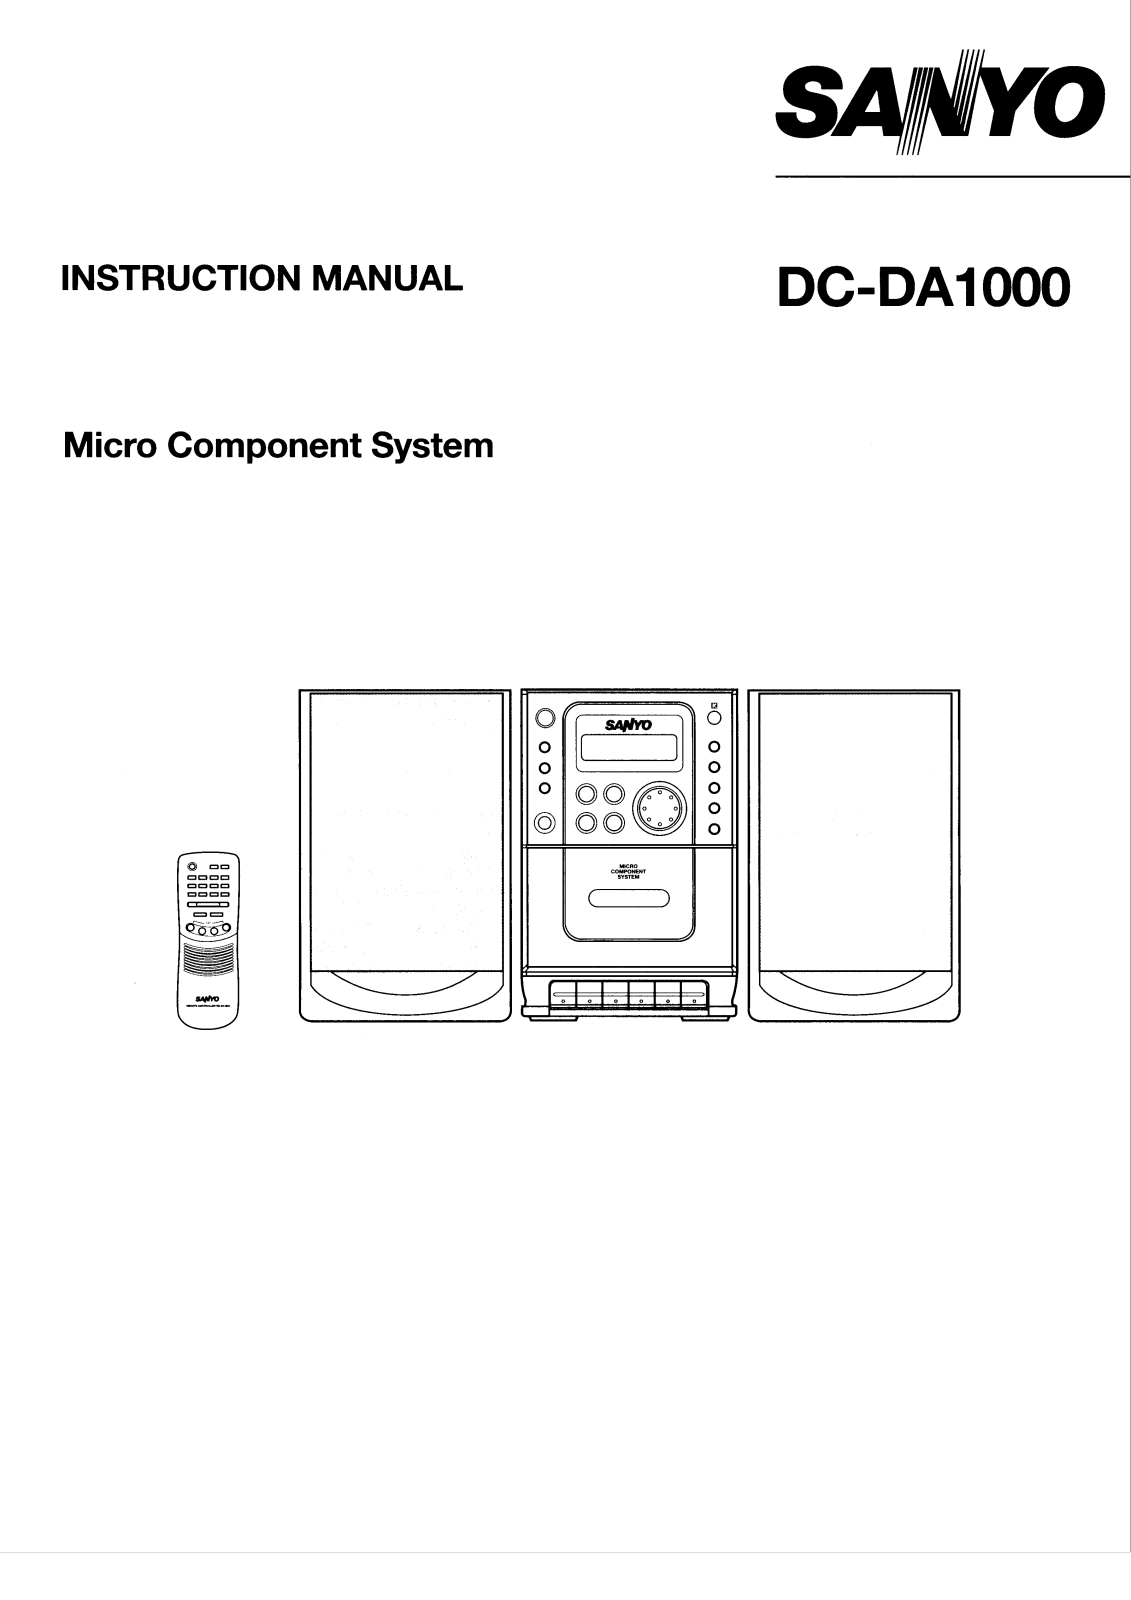 Sanyo DC-DA1000 Instruction Manual